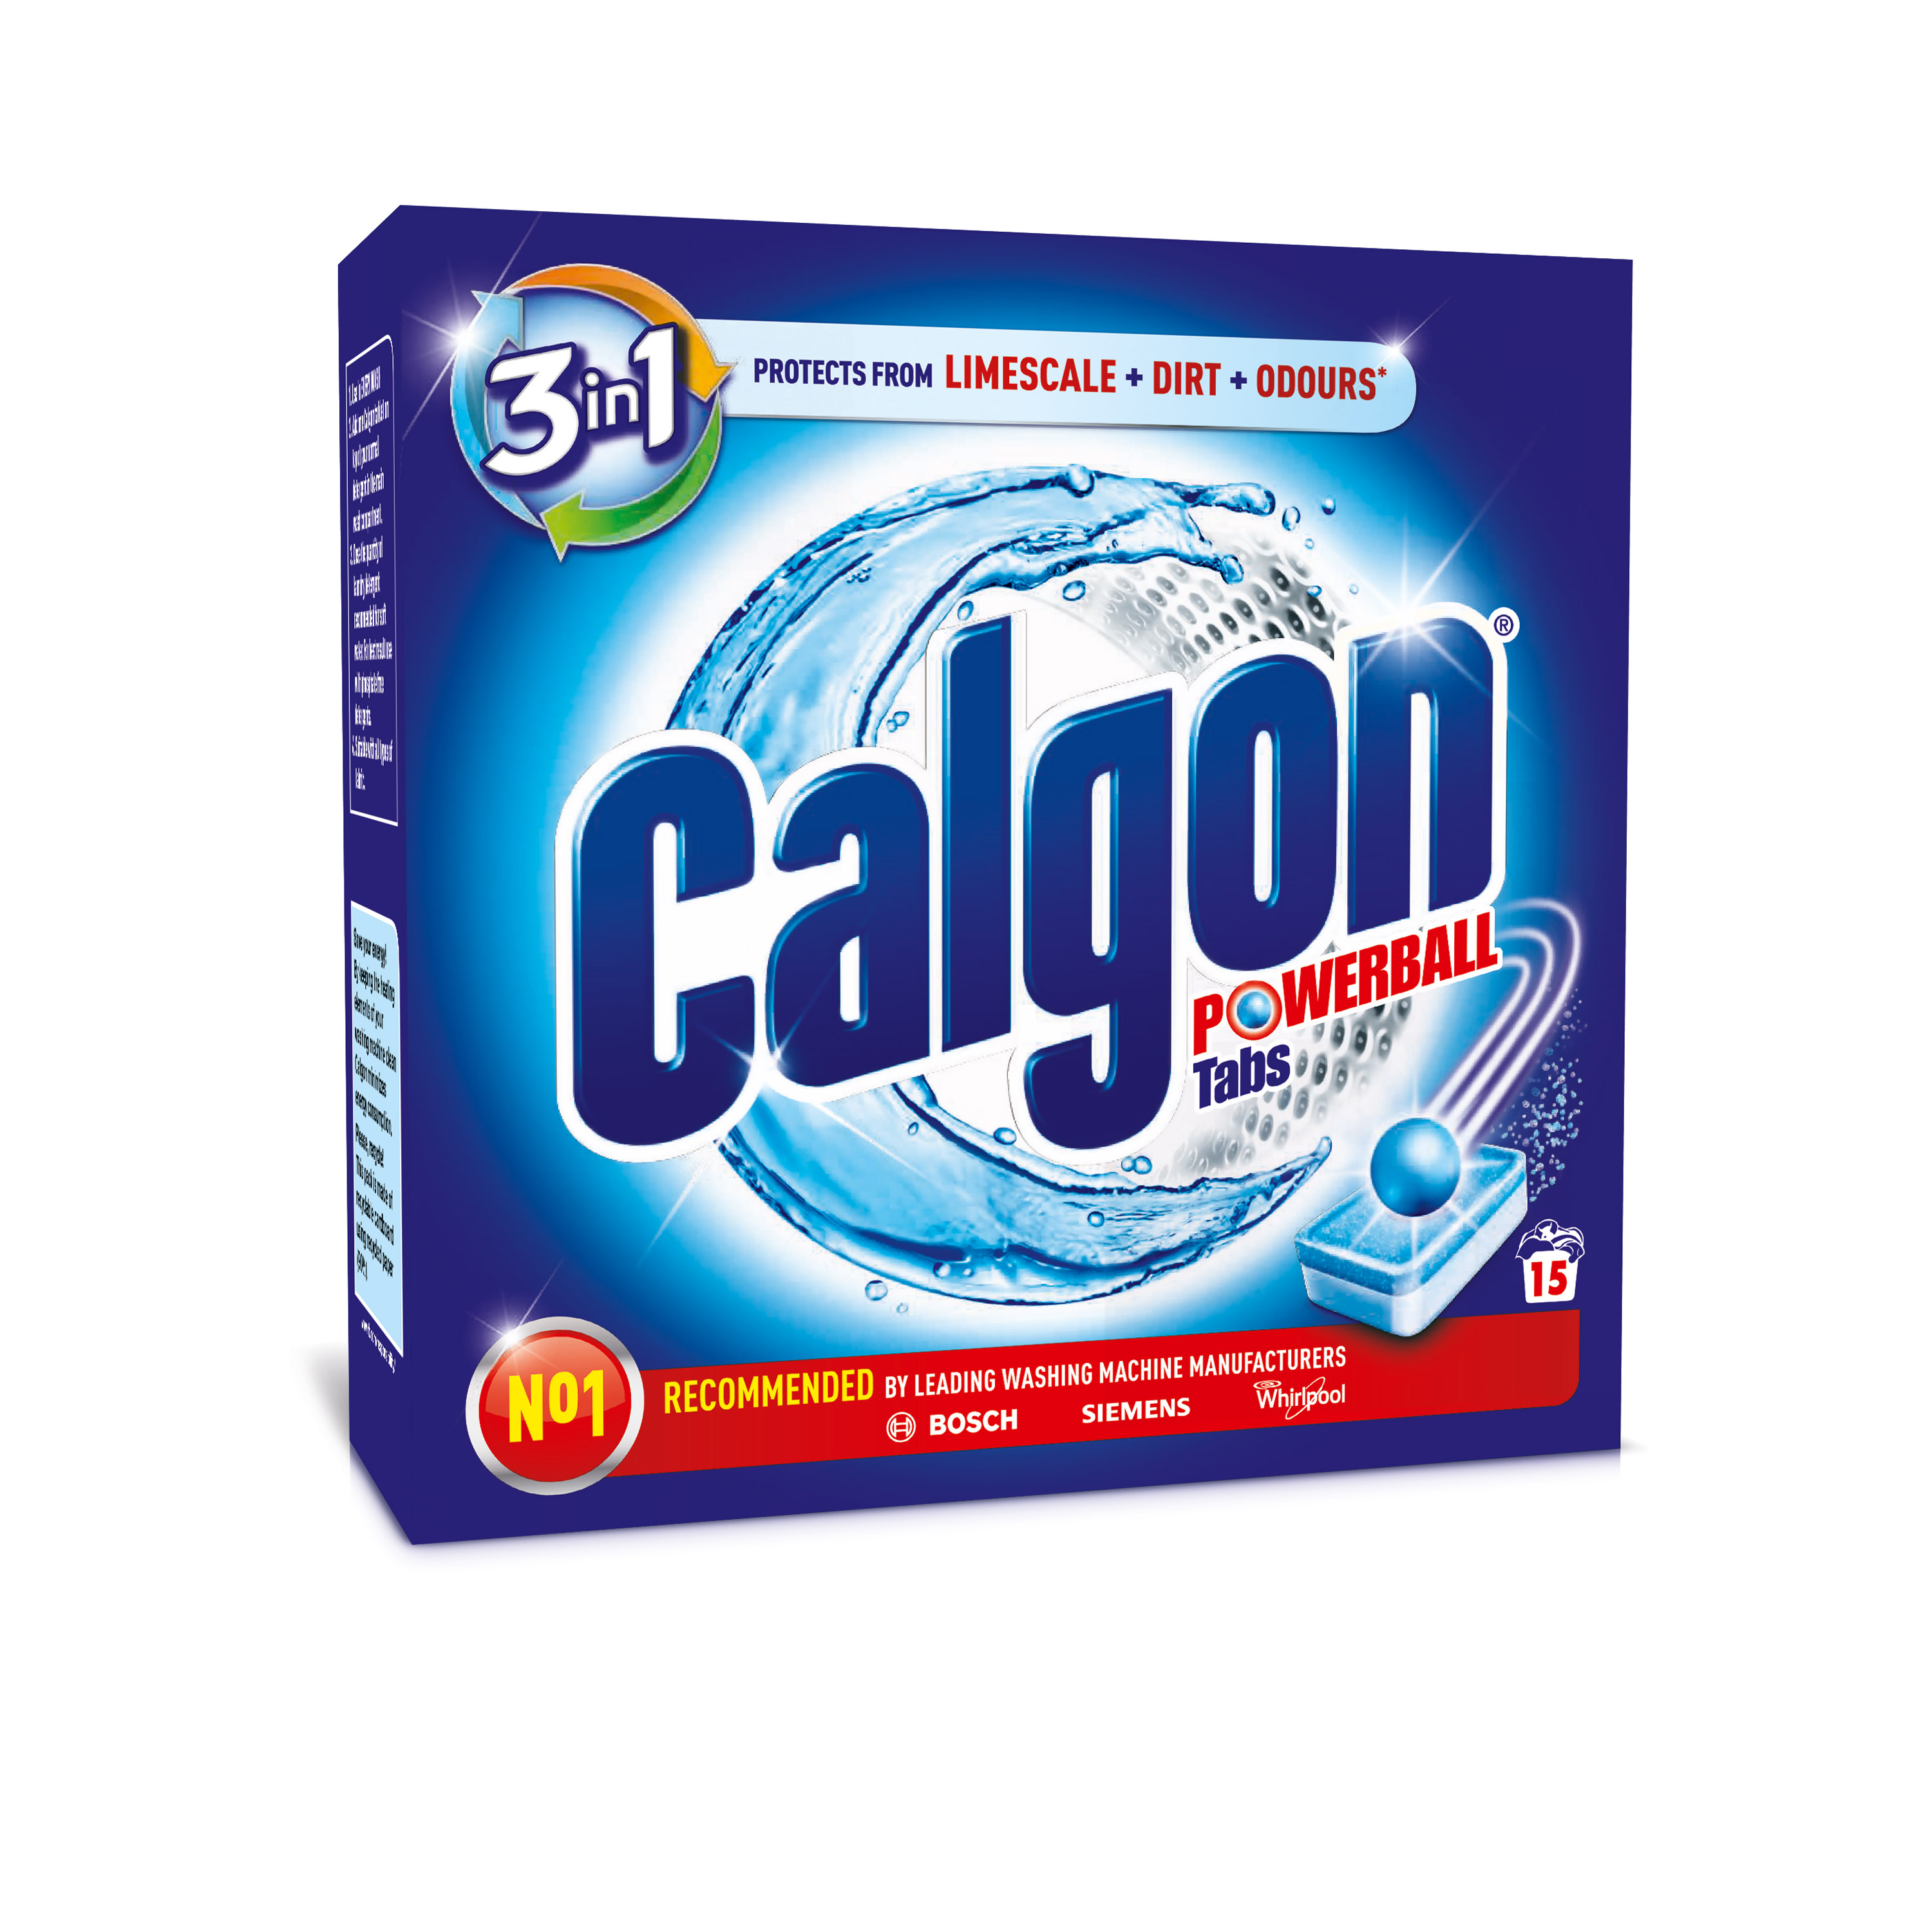 Средство для смягчения воды и предотвращения образования накипи в стиральных машинах Calgon Powerball 3 в 1, 15 шт. - фото 1